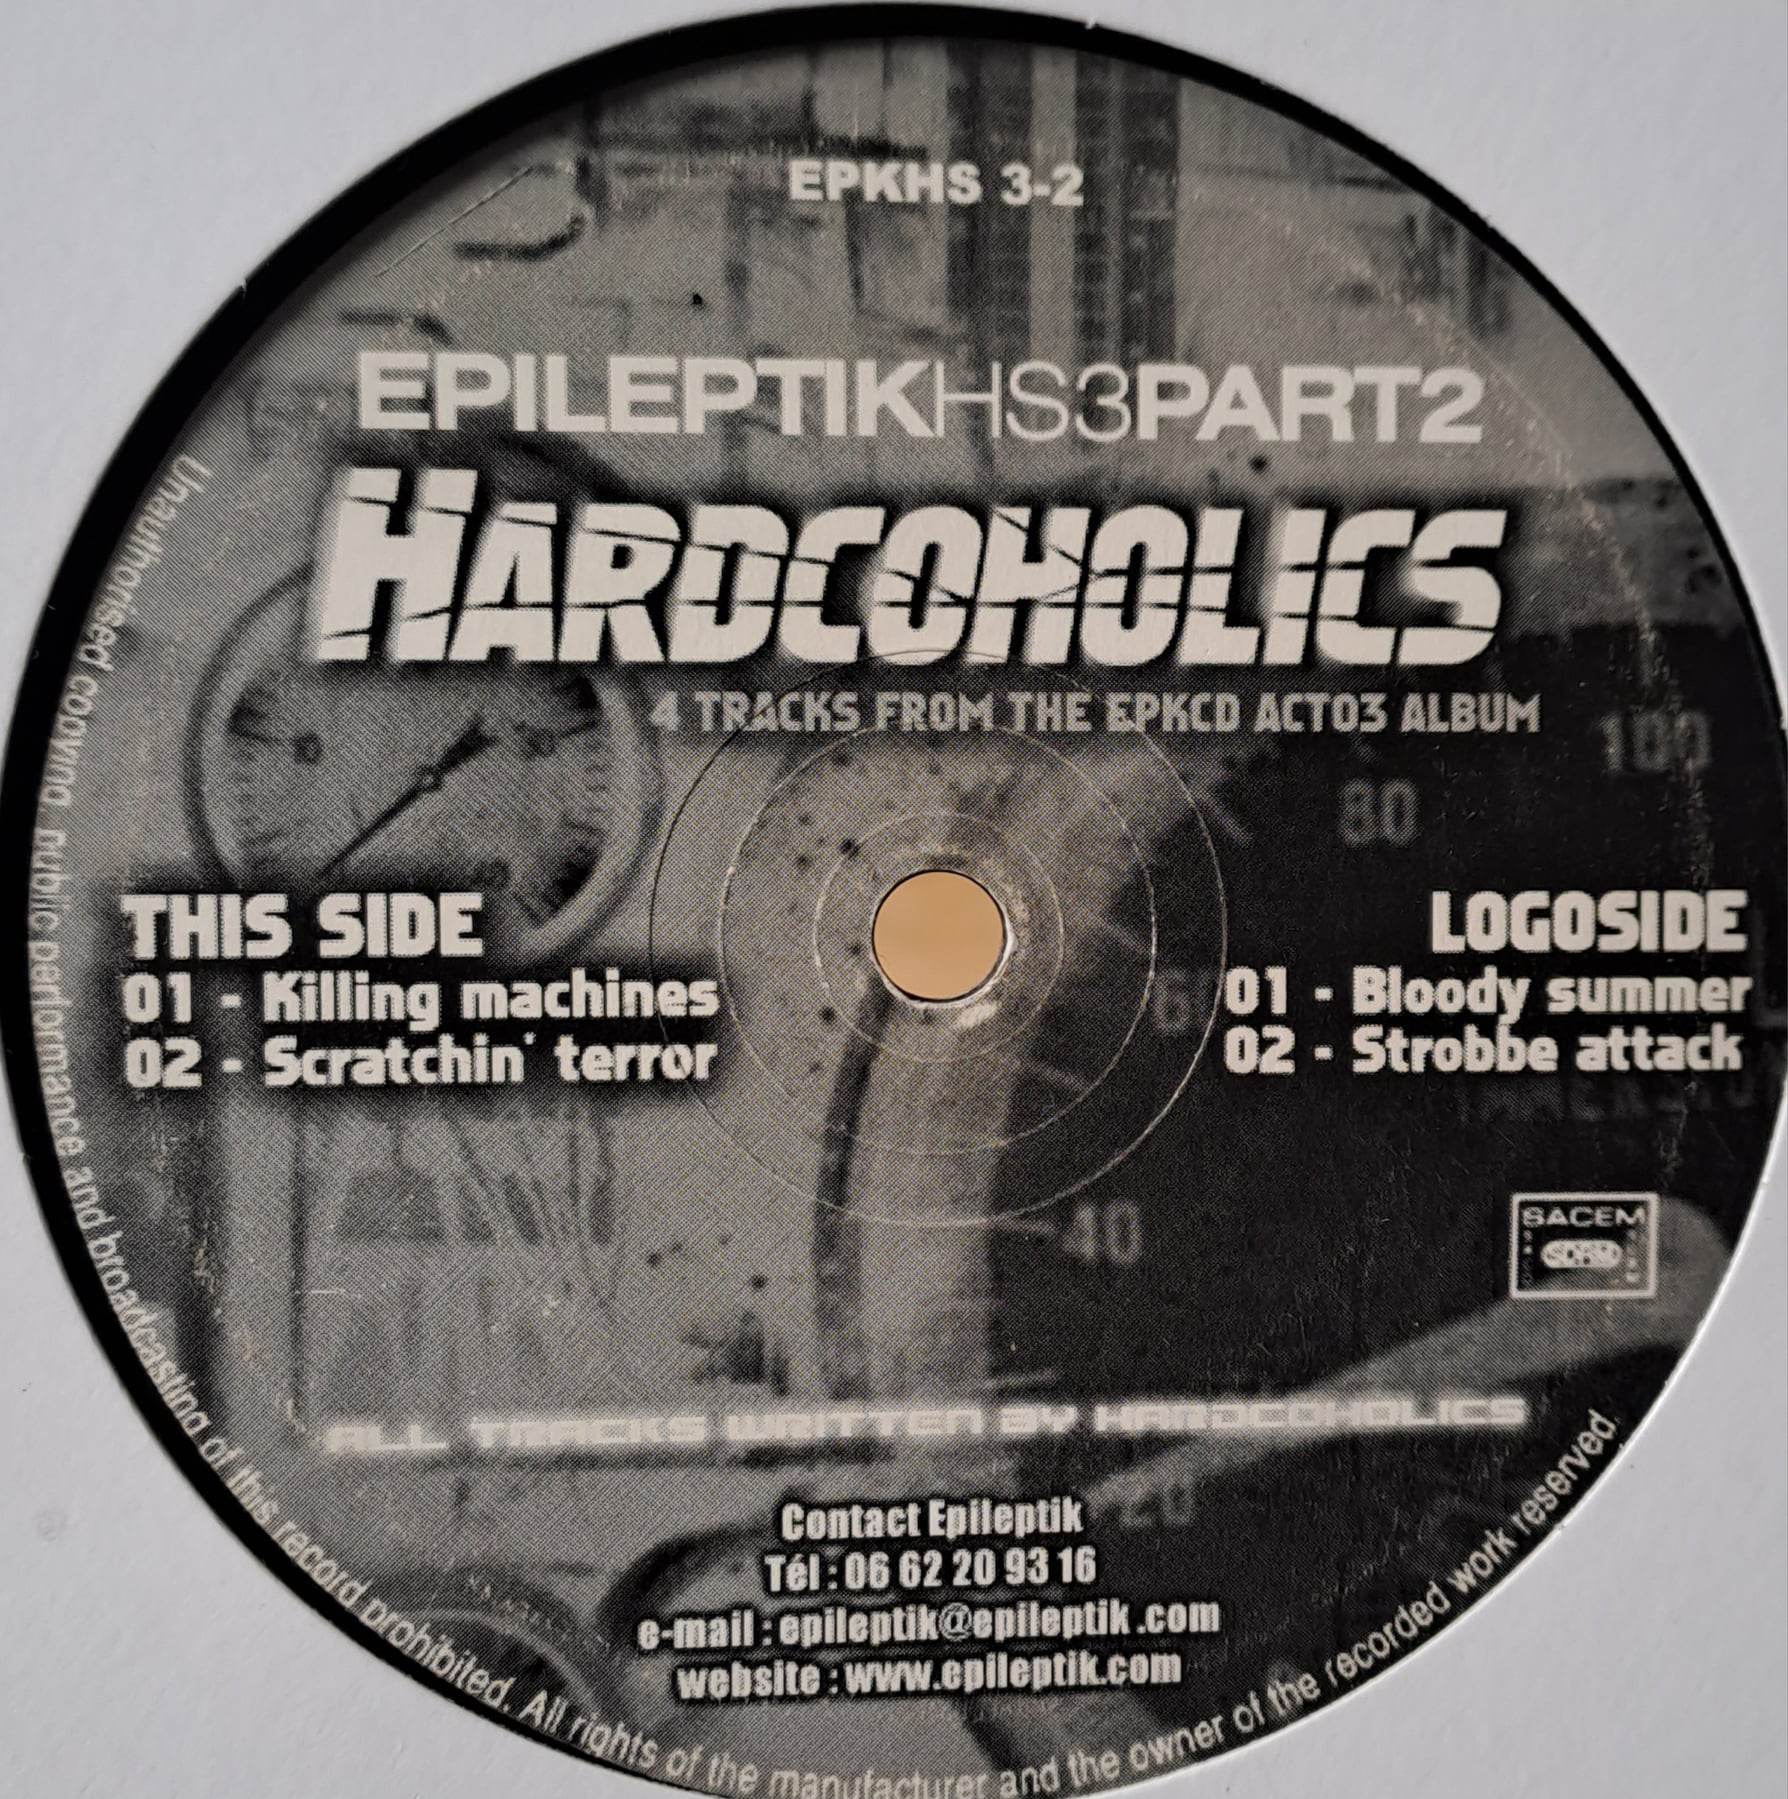 1) Epileptik Productions HS 3-2 - vinyle hardcore